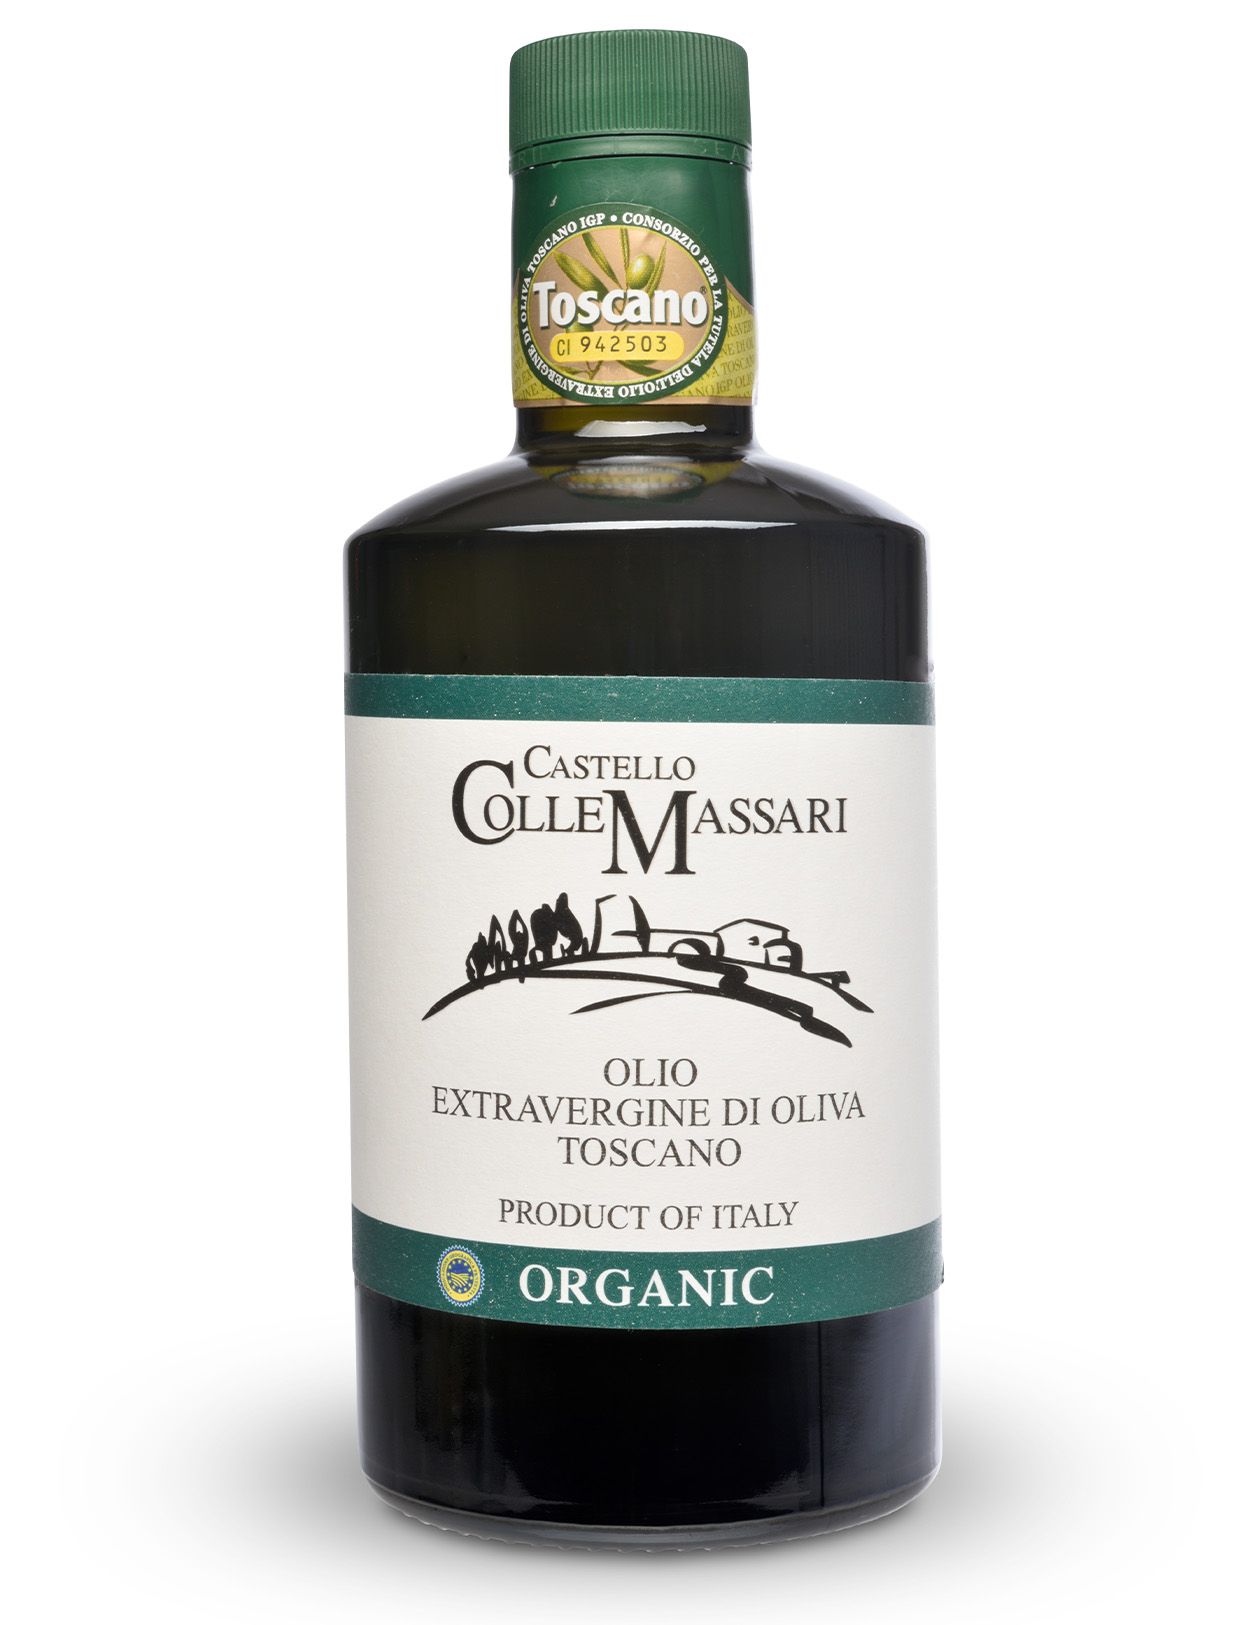 Castello ColleMassari I.G.P. Organic Extra Virgin Olive Oil